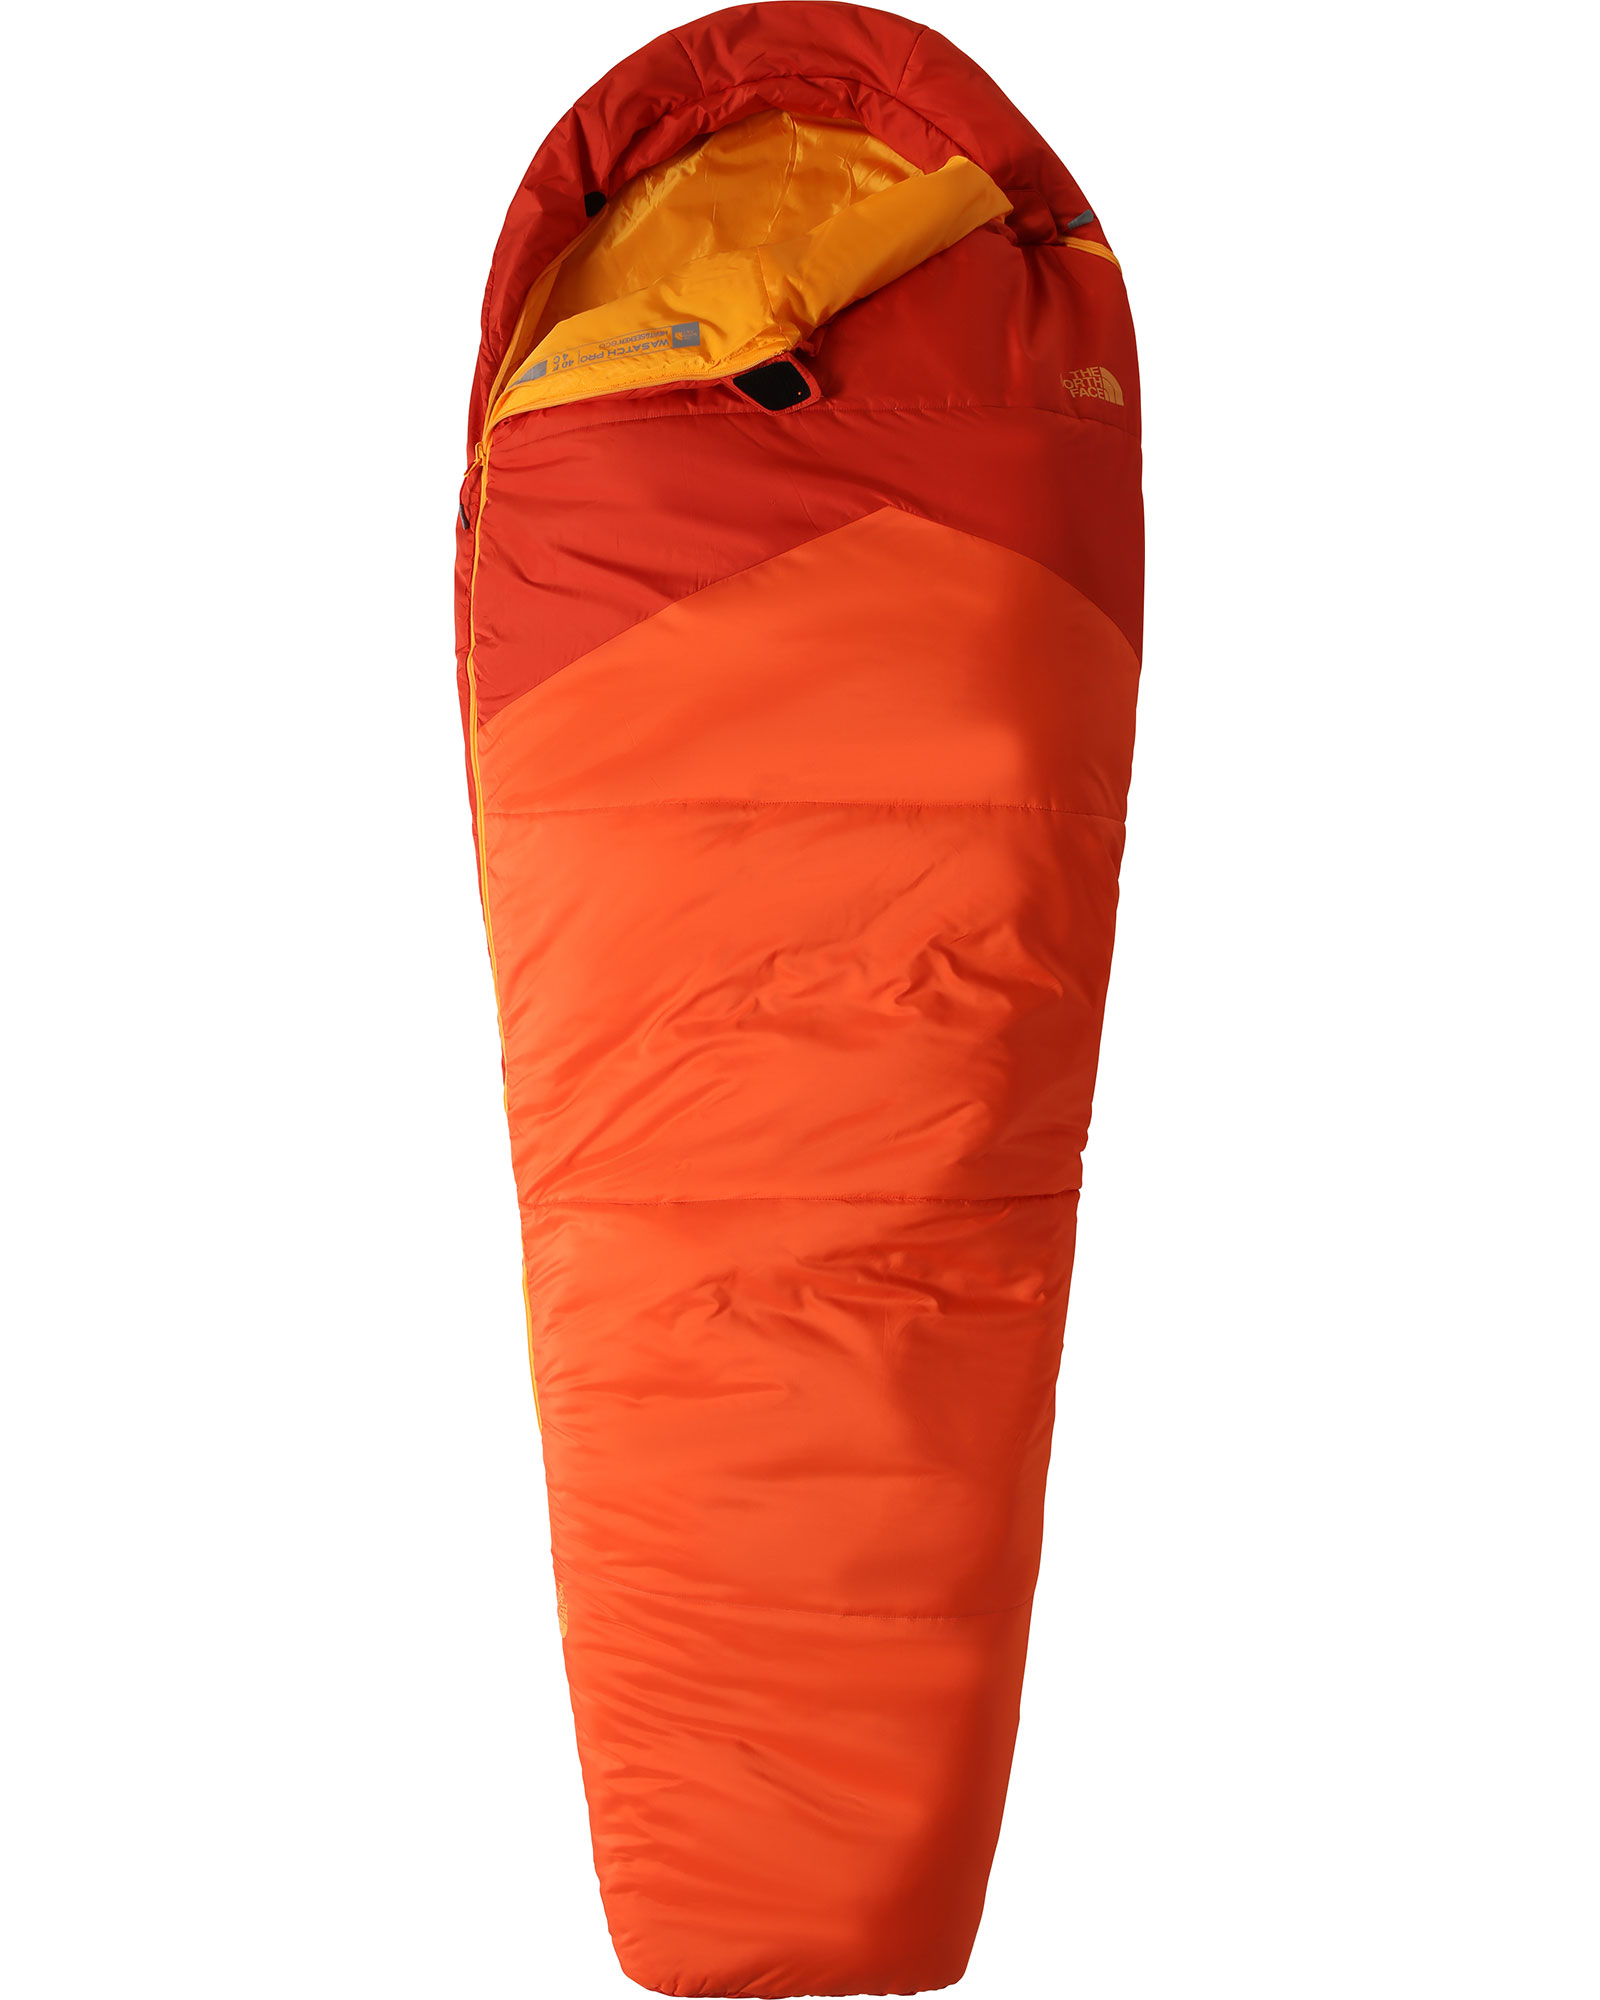 The North Face Wasatch Pro 40 Regular - Zion Orange/Persain Orange Right Zip